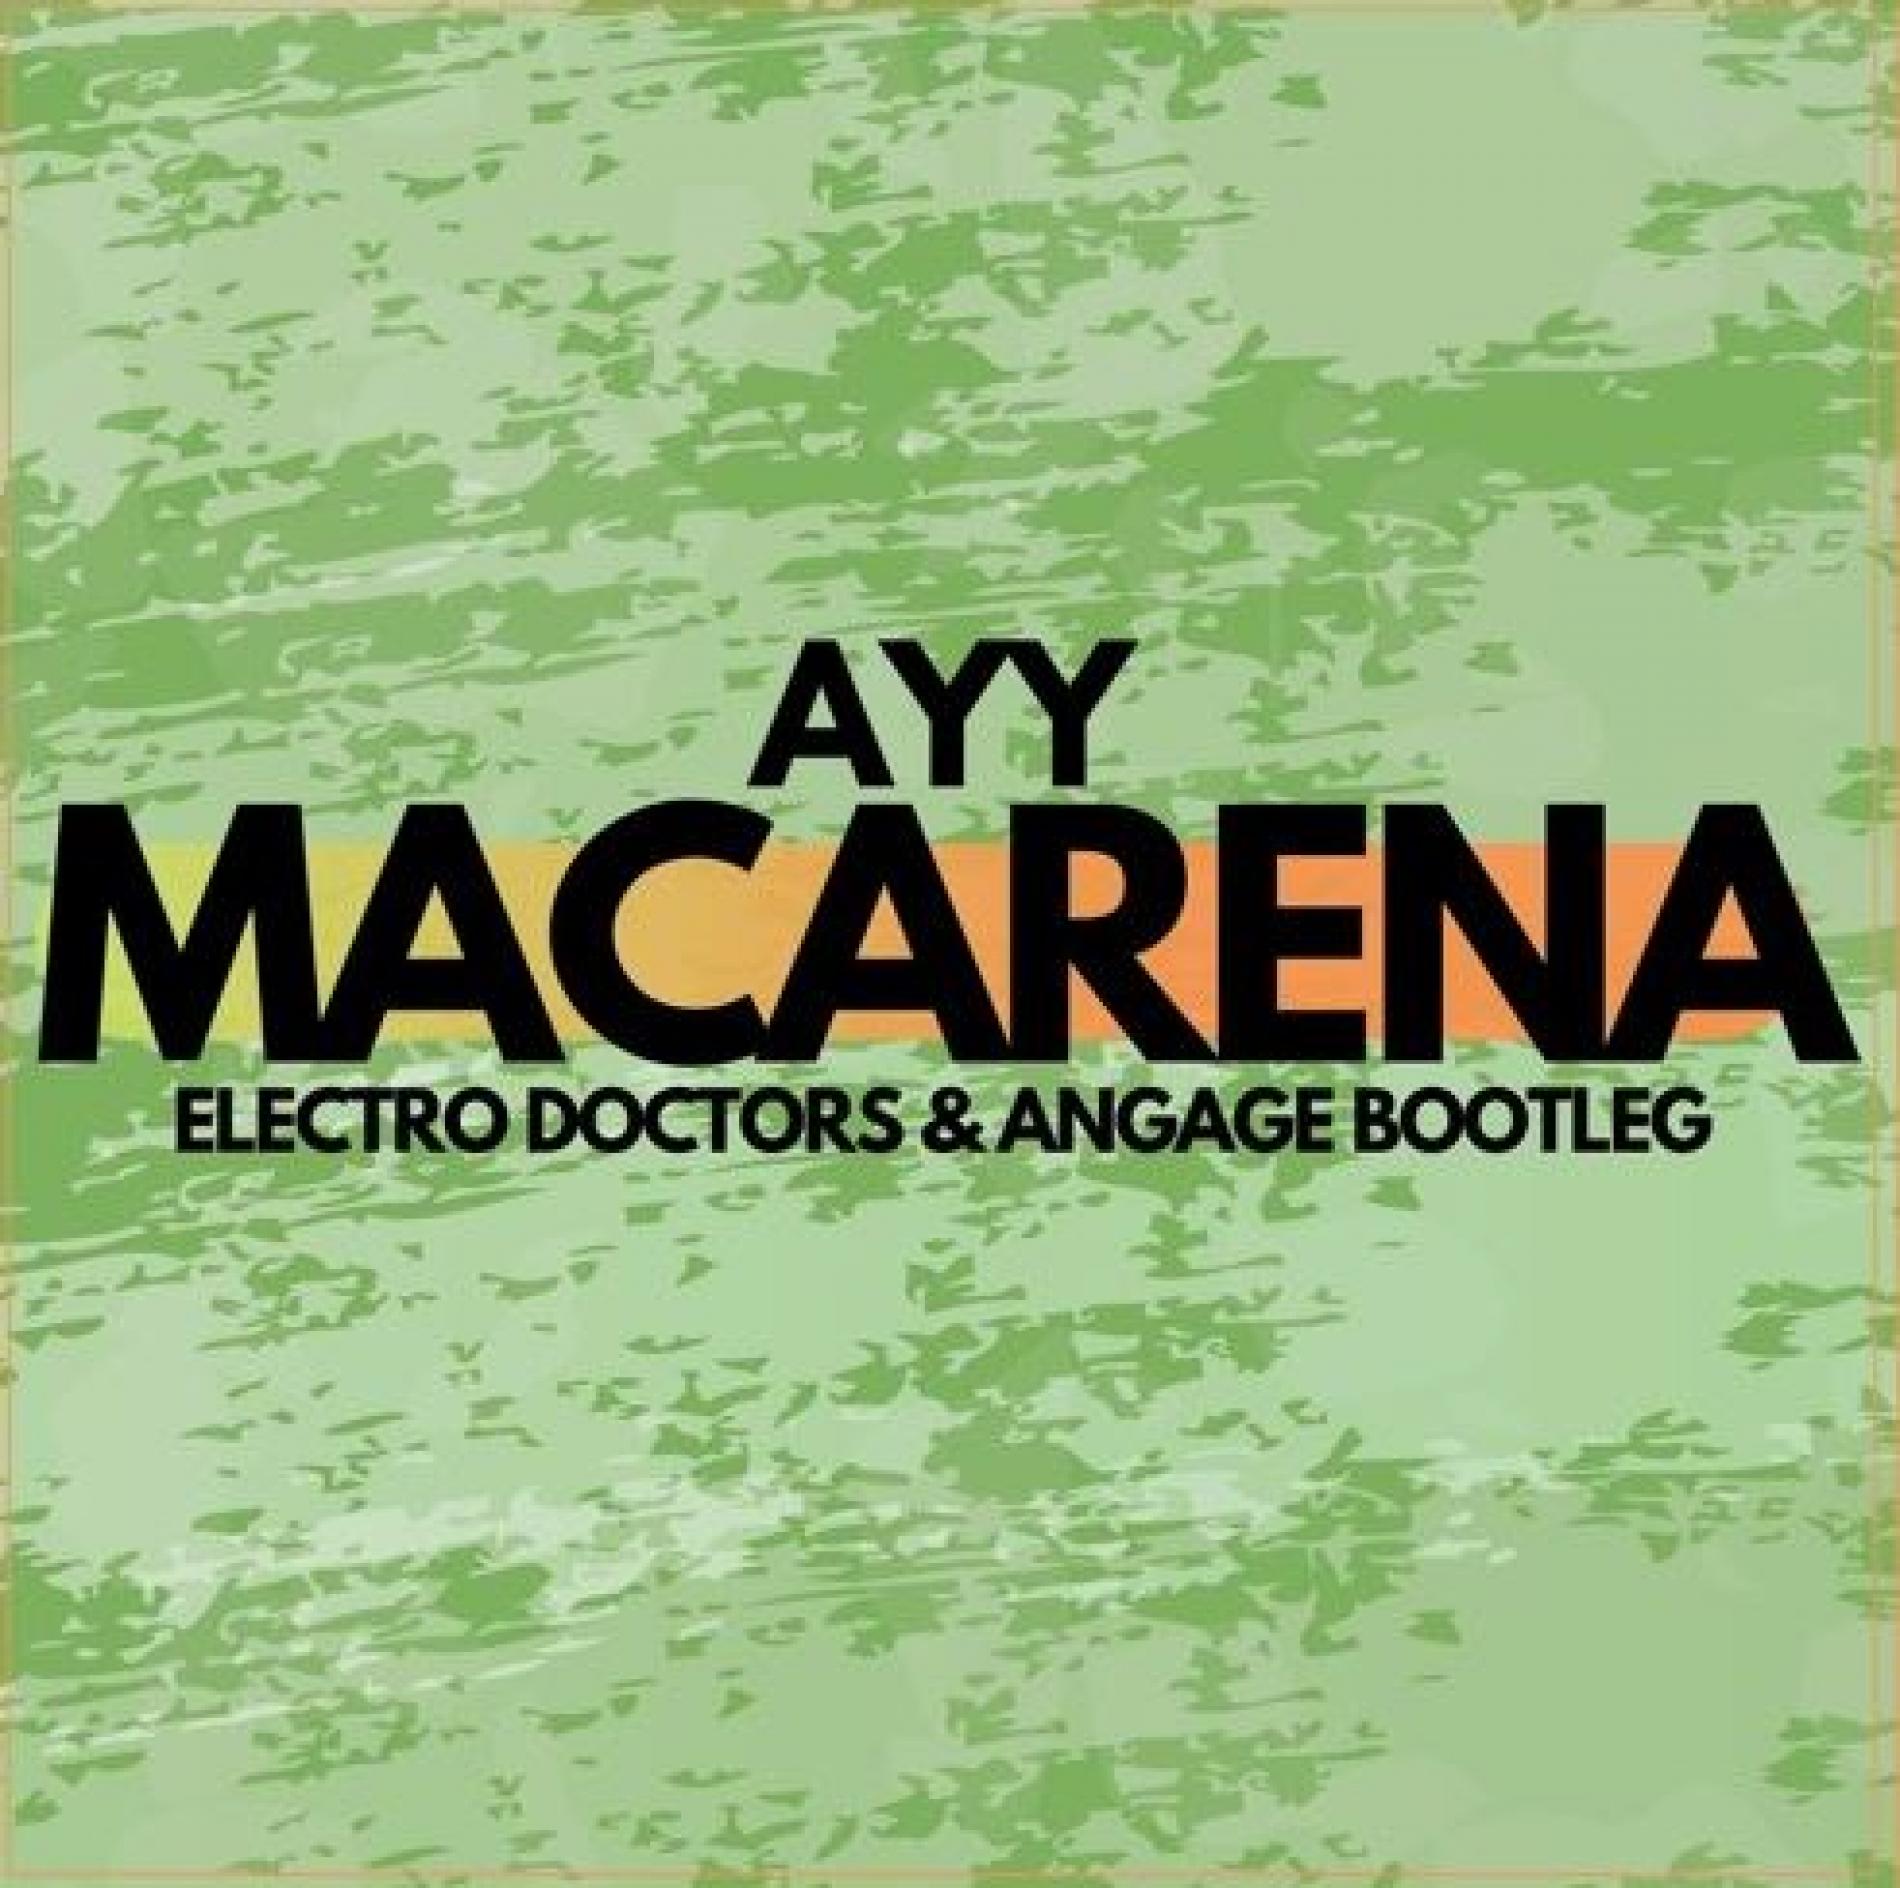 Tyga – Ayy Macarena (Electro Doctors & Angage Booteg)